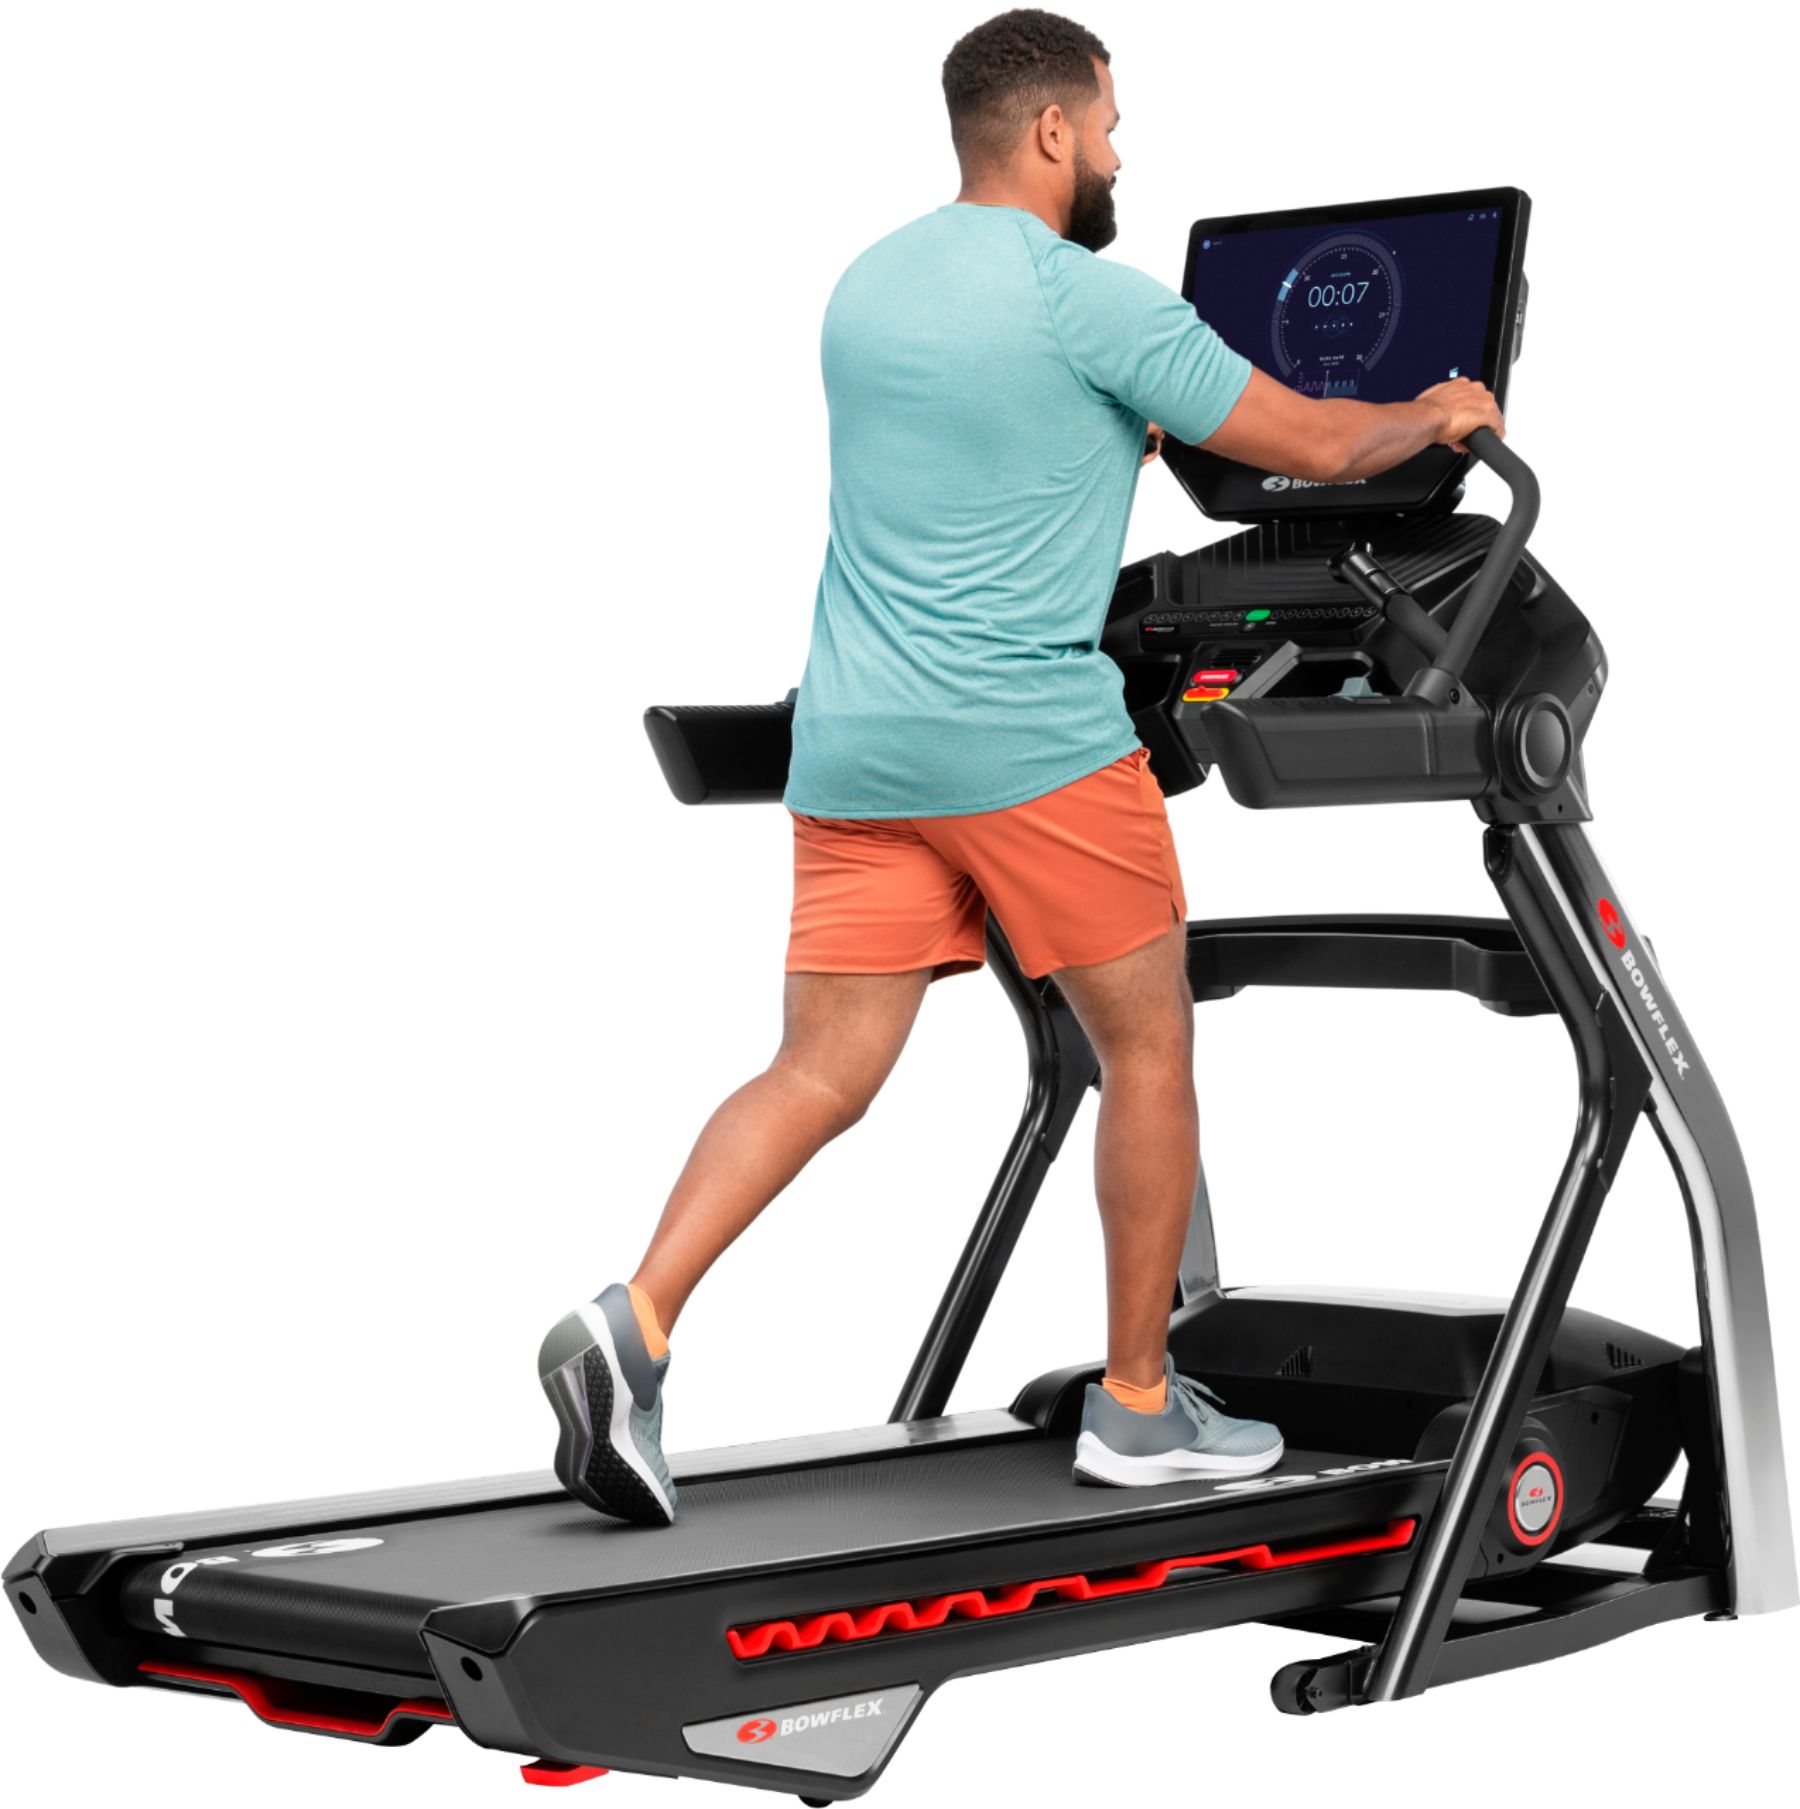 BowFlex Treadmill 22 Black 100910 - Best Buy